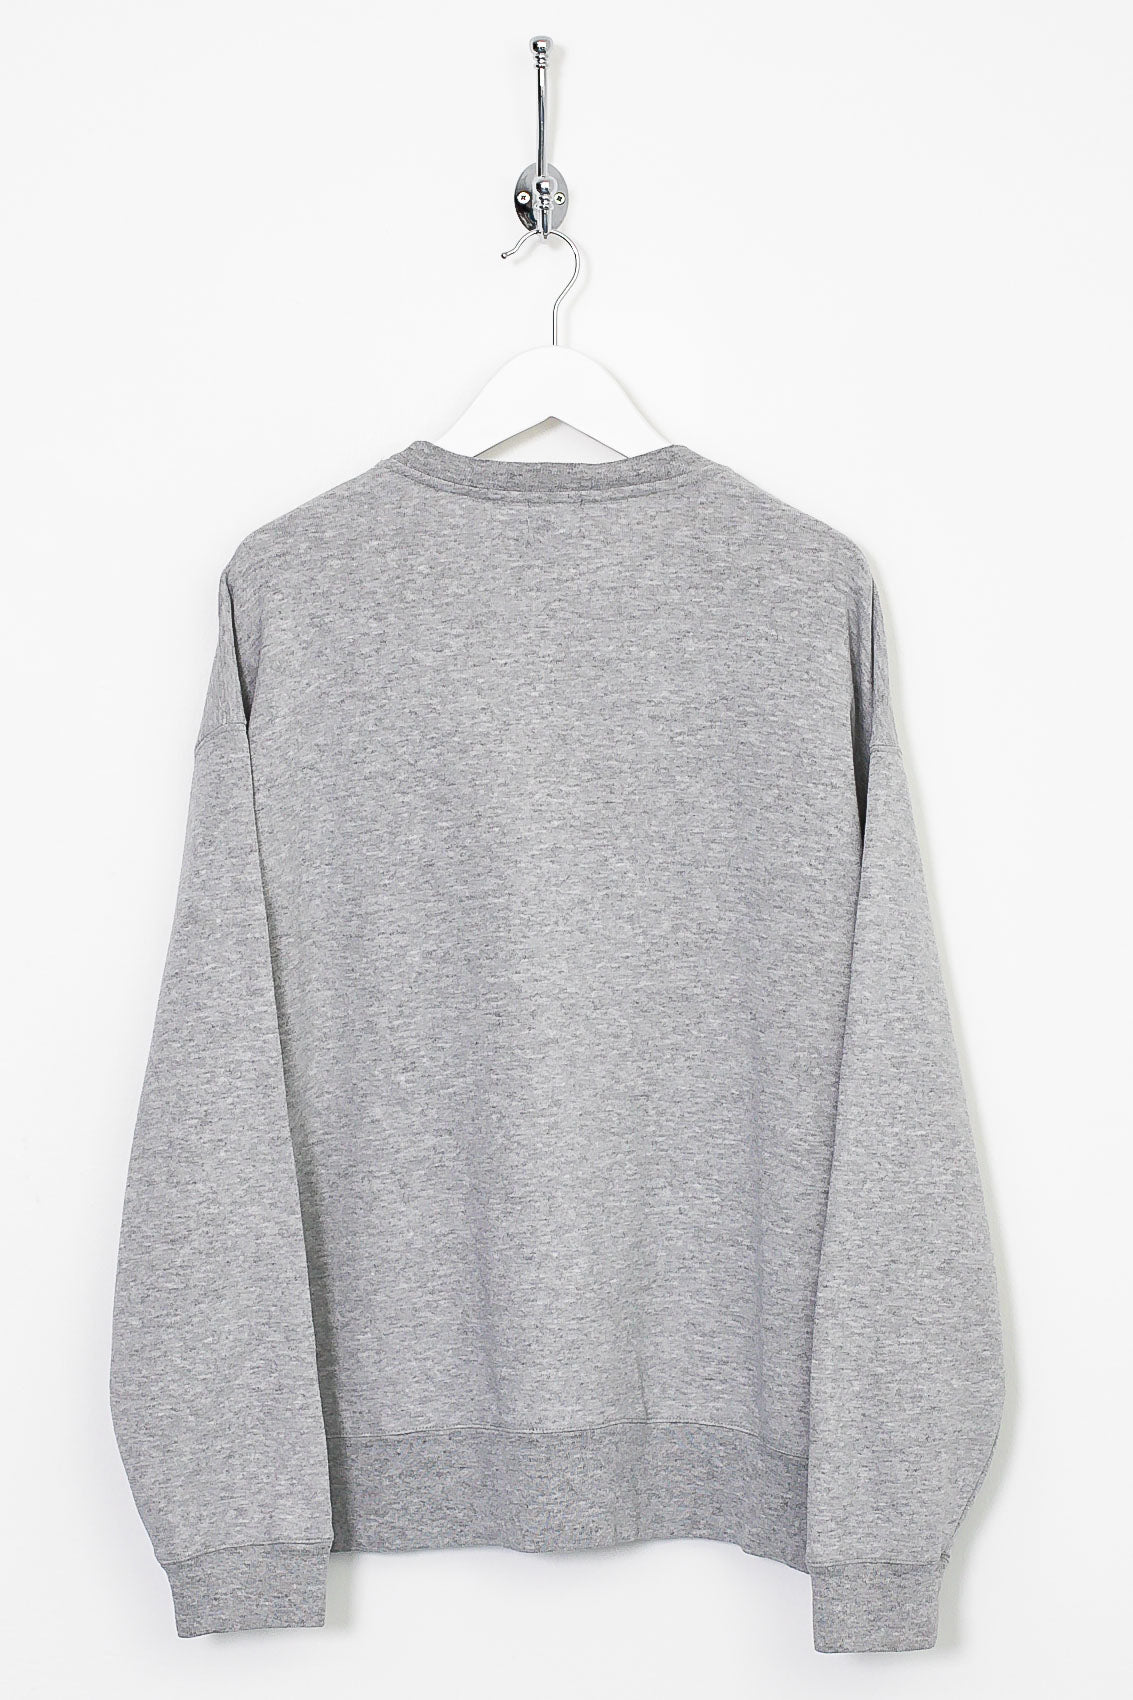 00s Calvin Klein Sweatshirt (M)